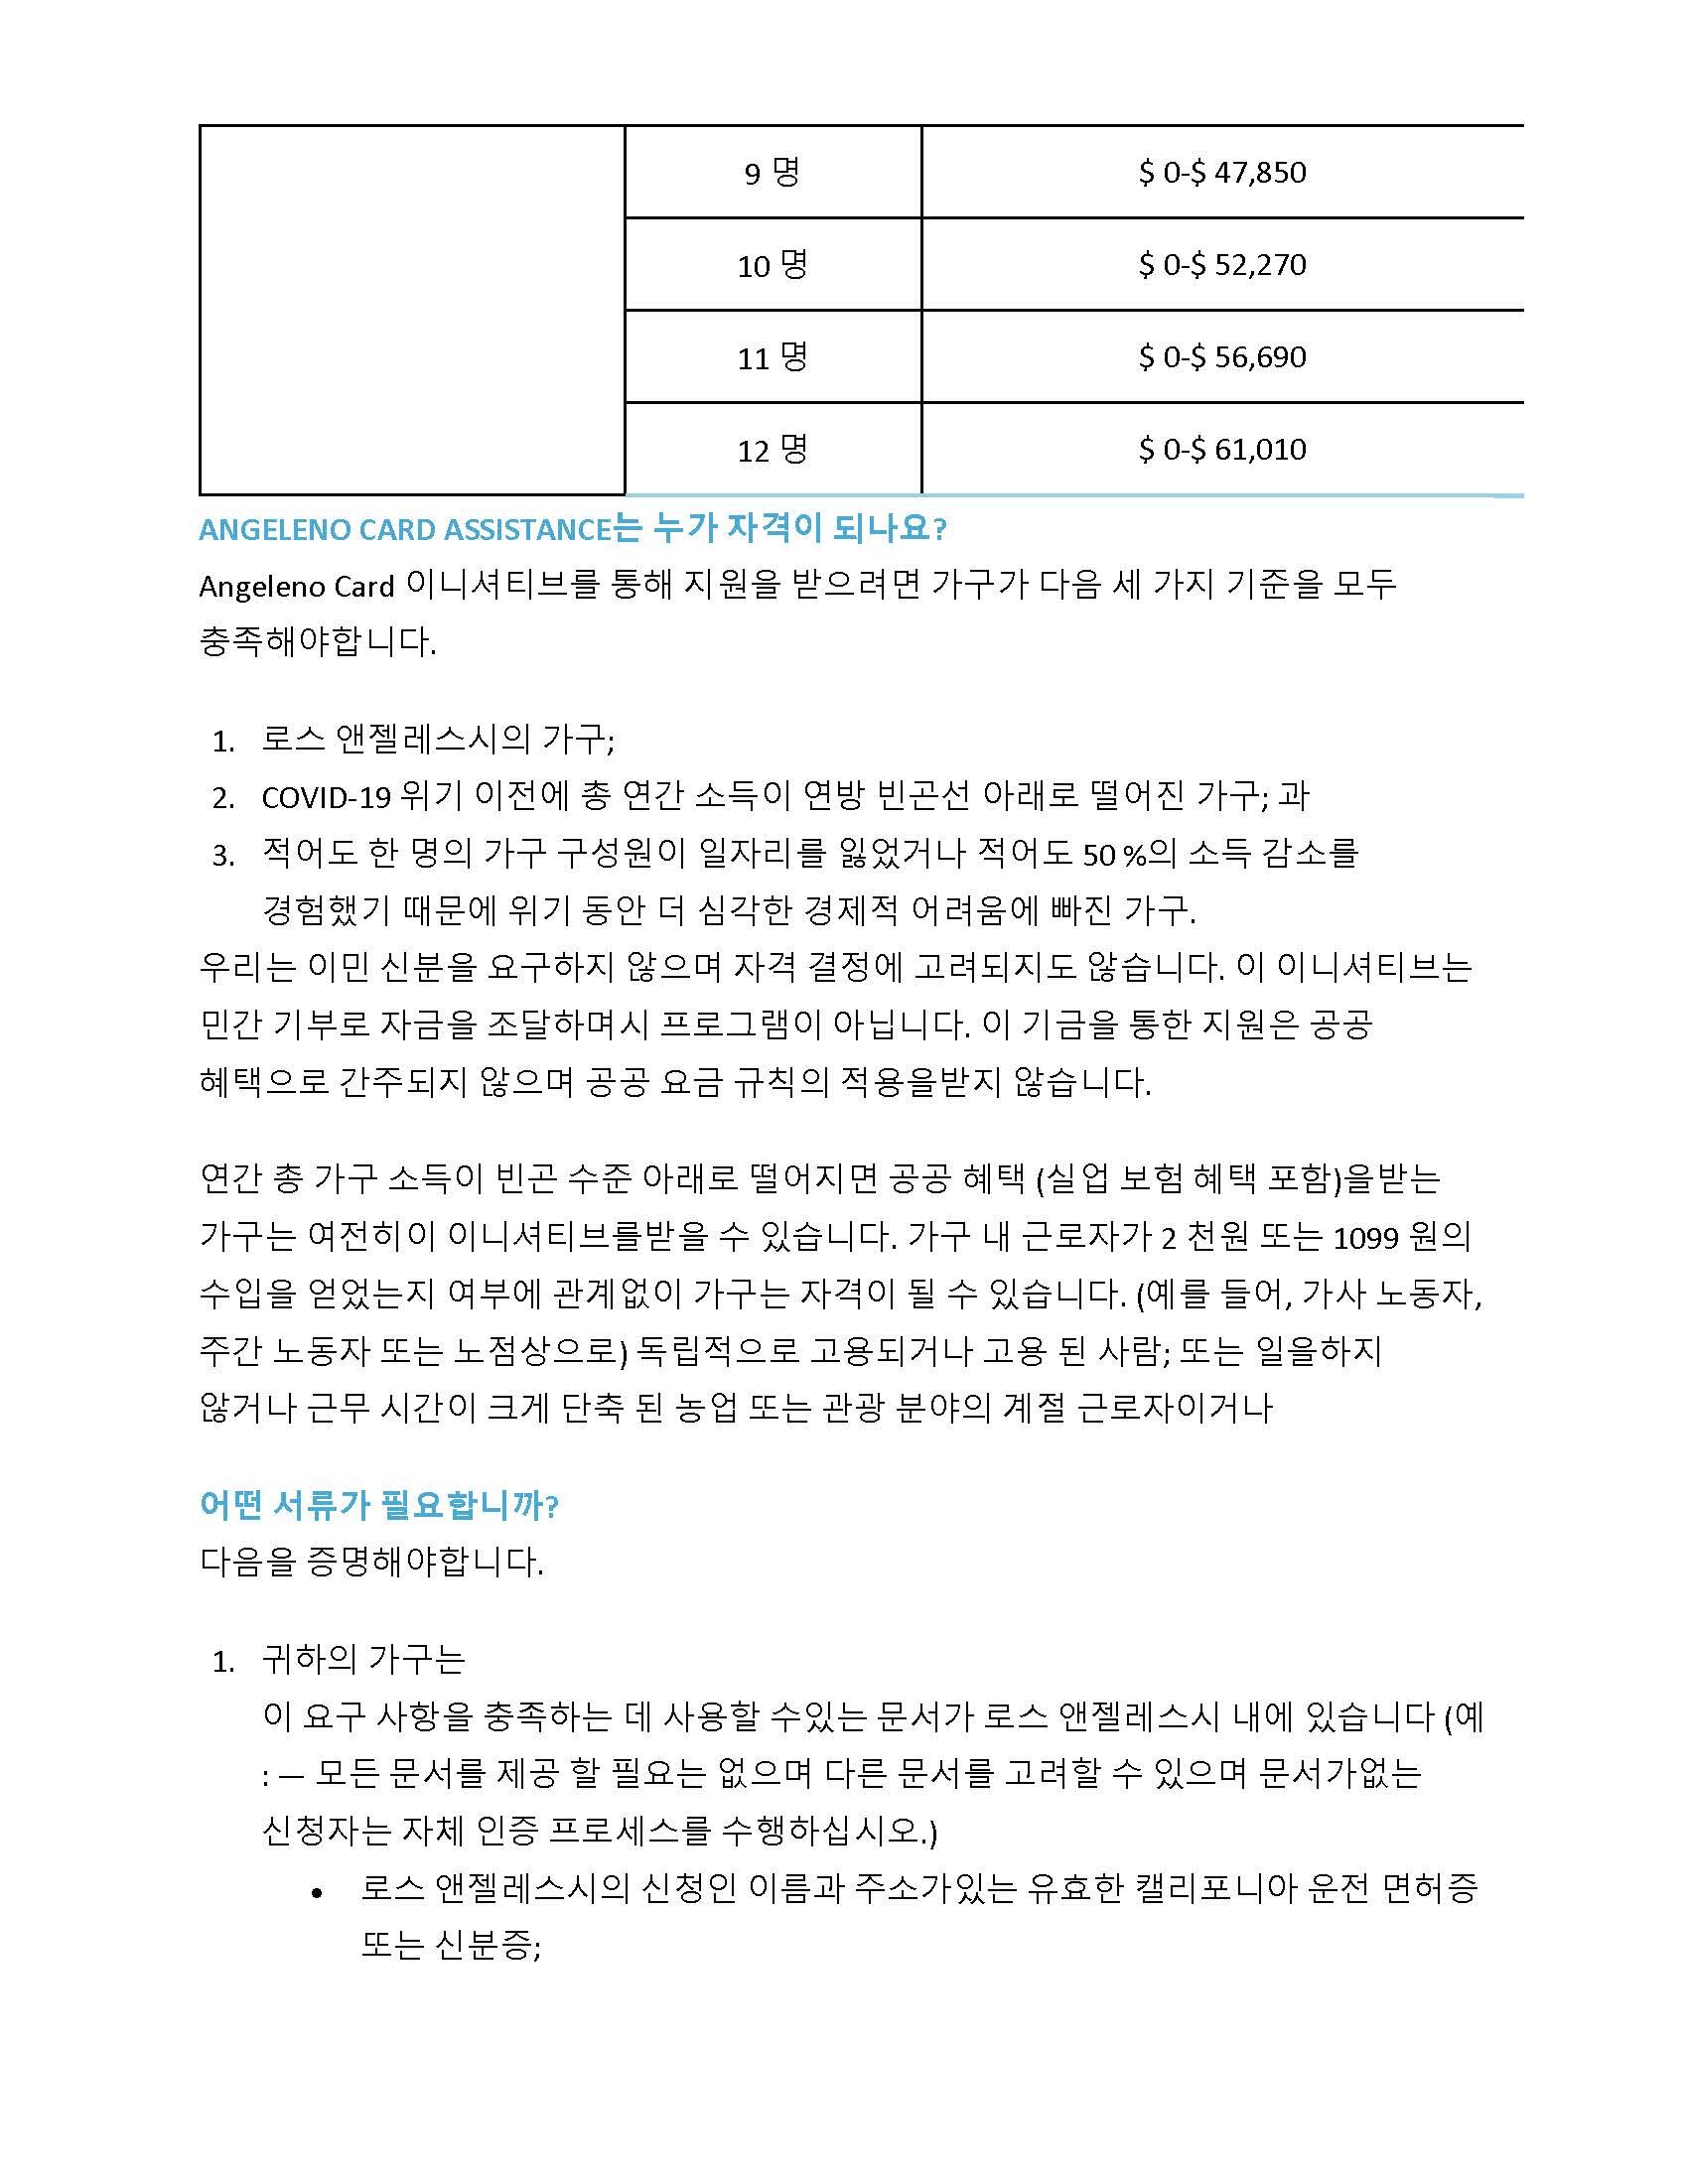 Angeleno Fund Korean_Page_2.jpg